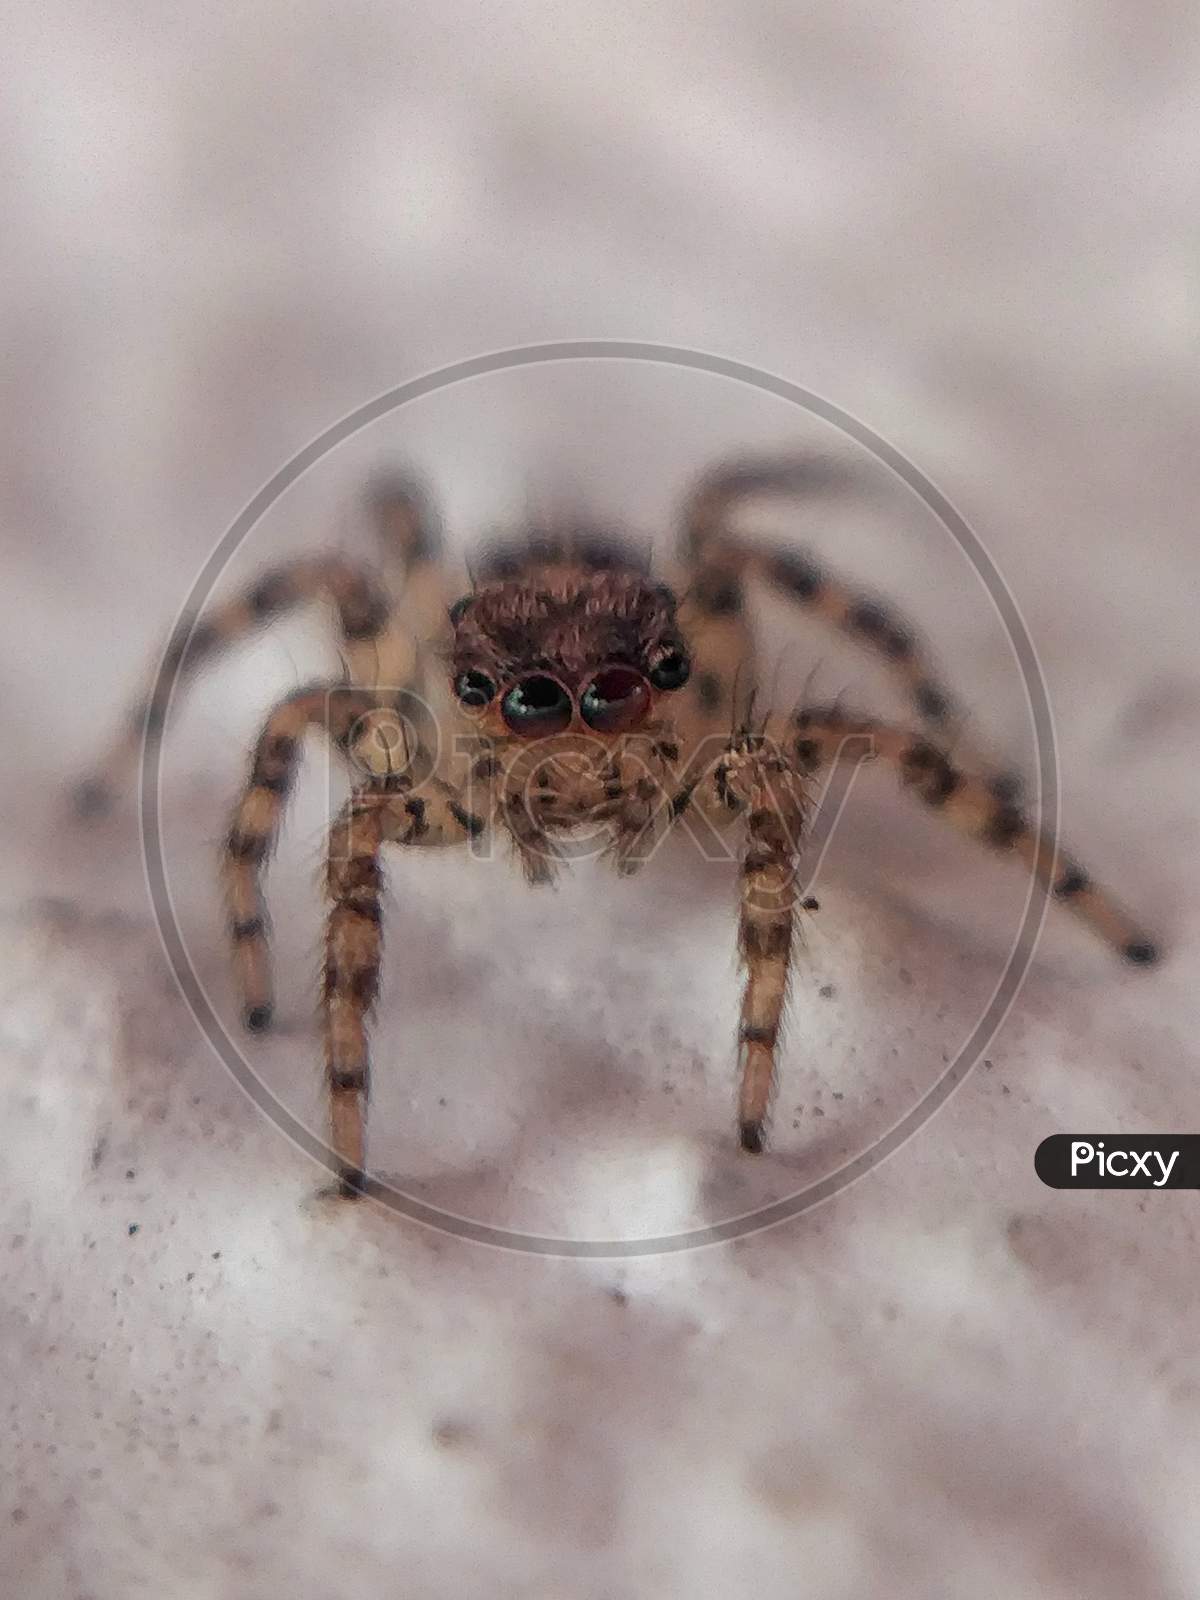 Spider macro,Menemerus bivutattus